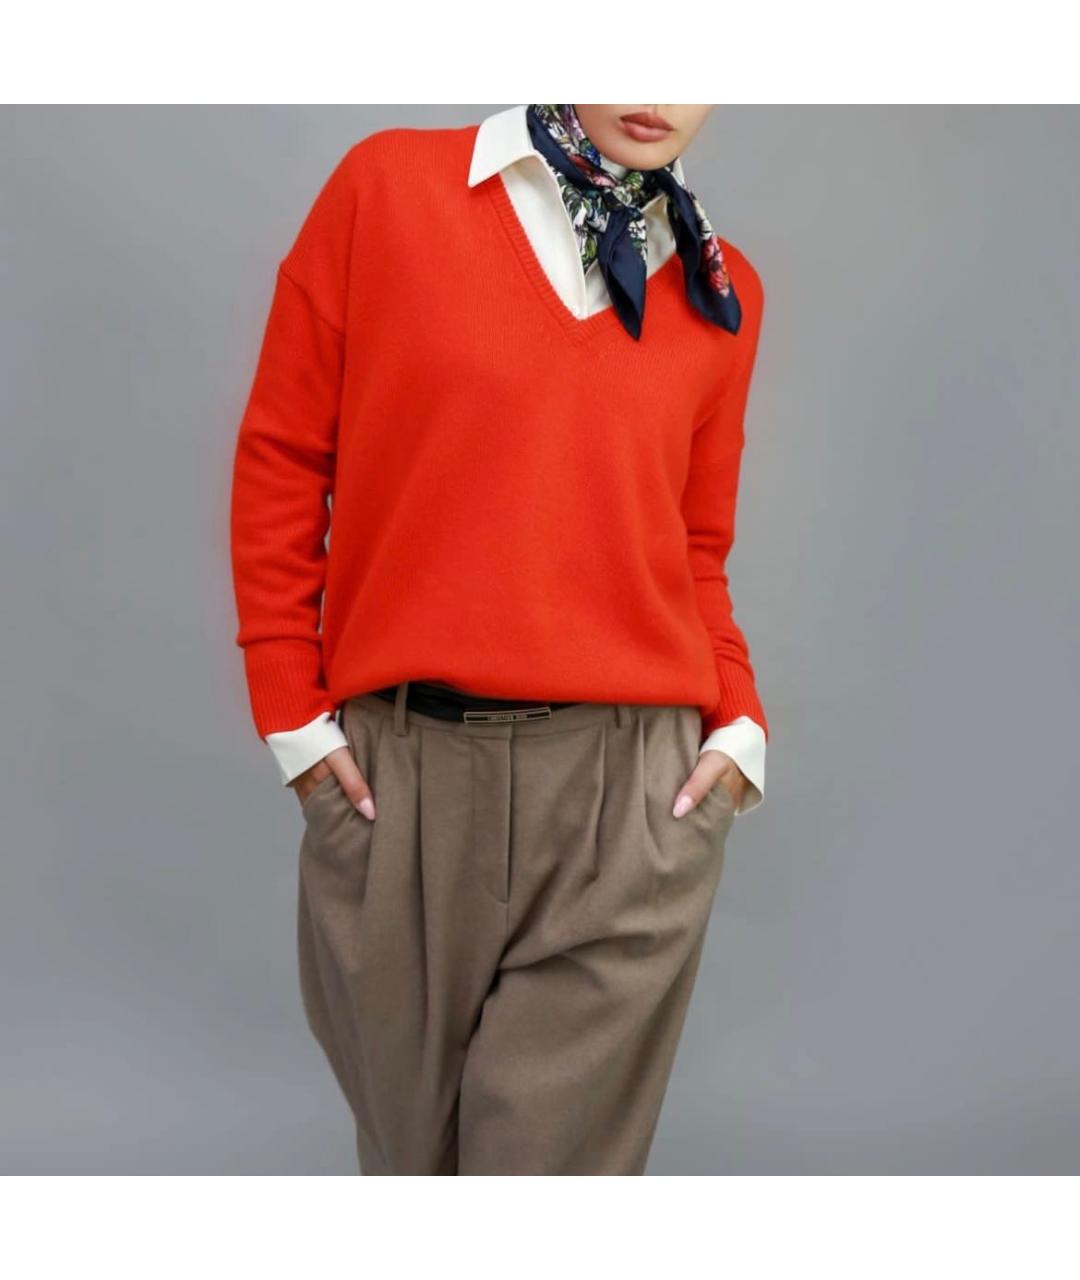 CO Красный кашемировый джемпер / свитер, фото 2